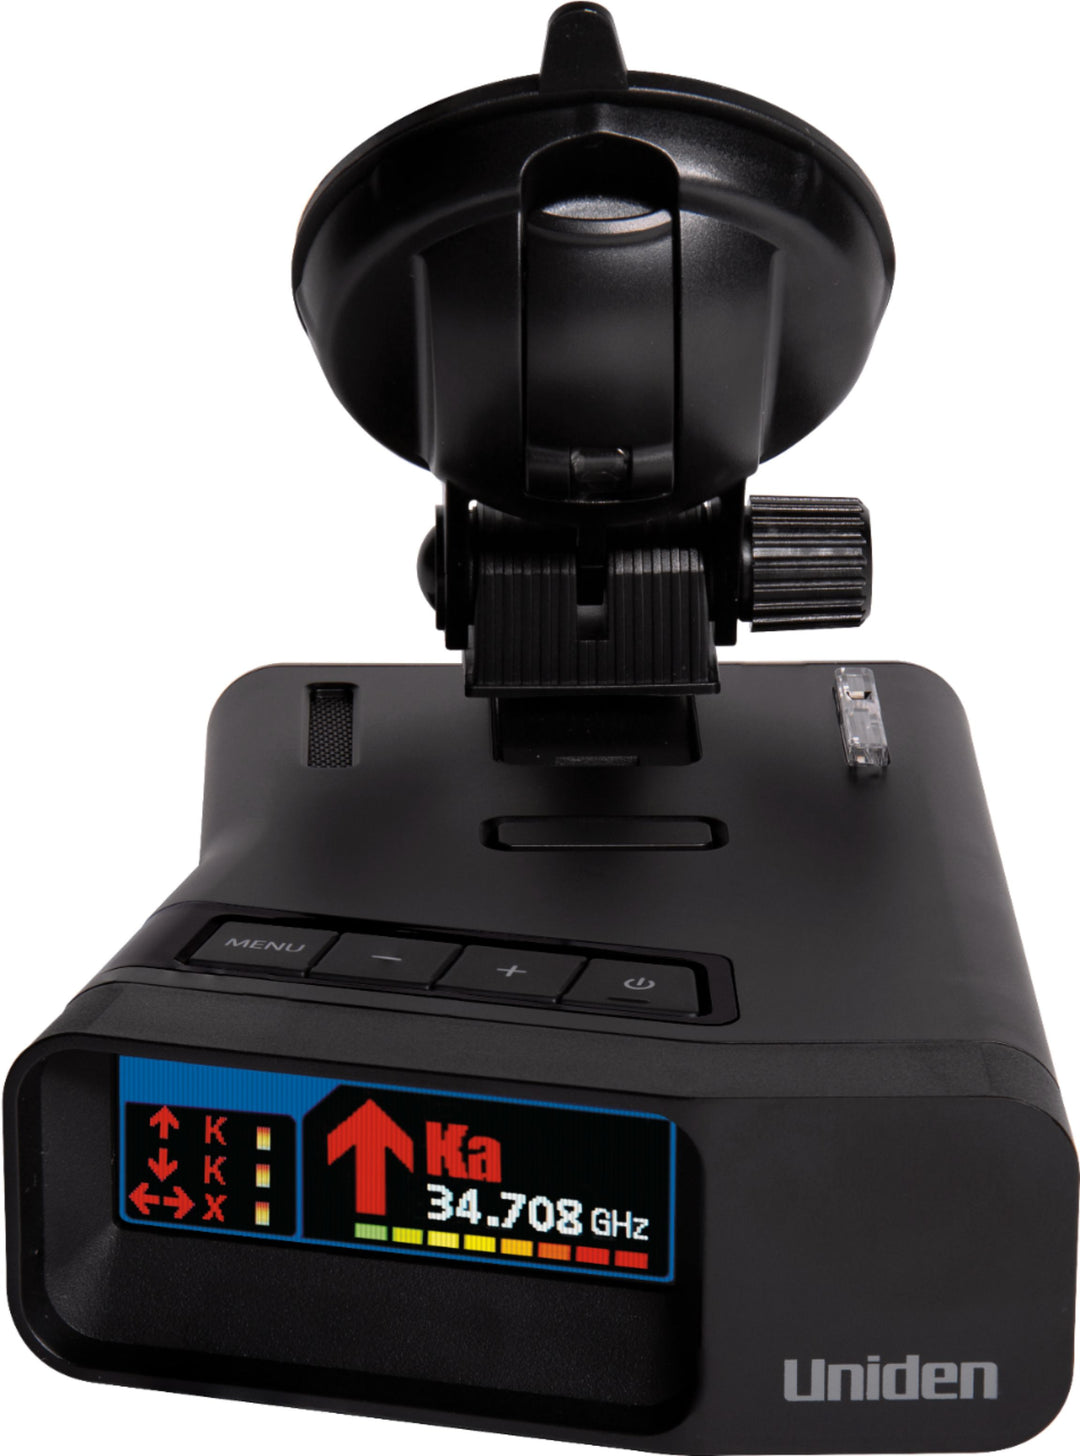 Uniden - R7 Radar Detector - Black_1